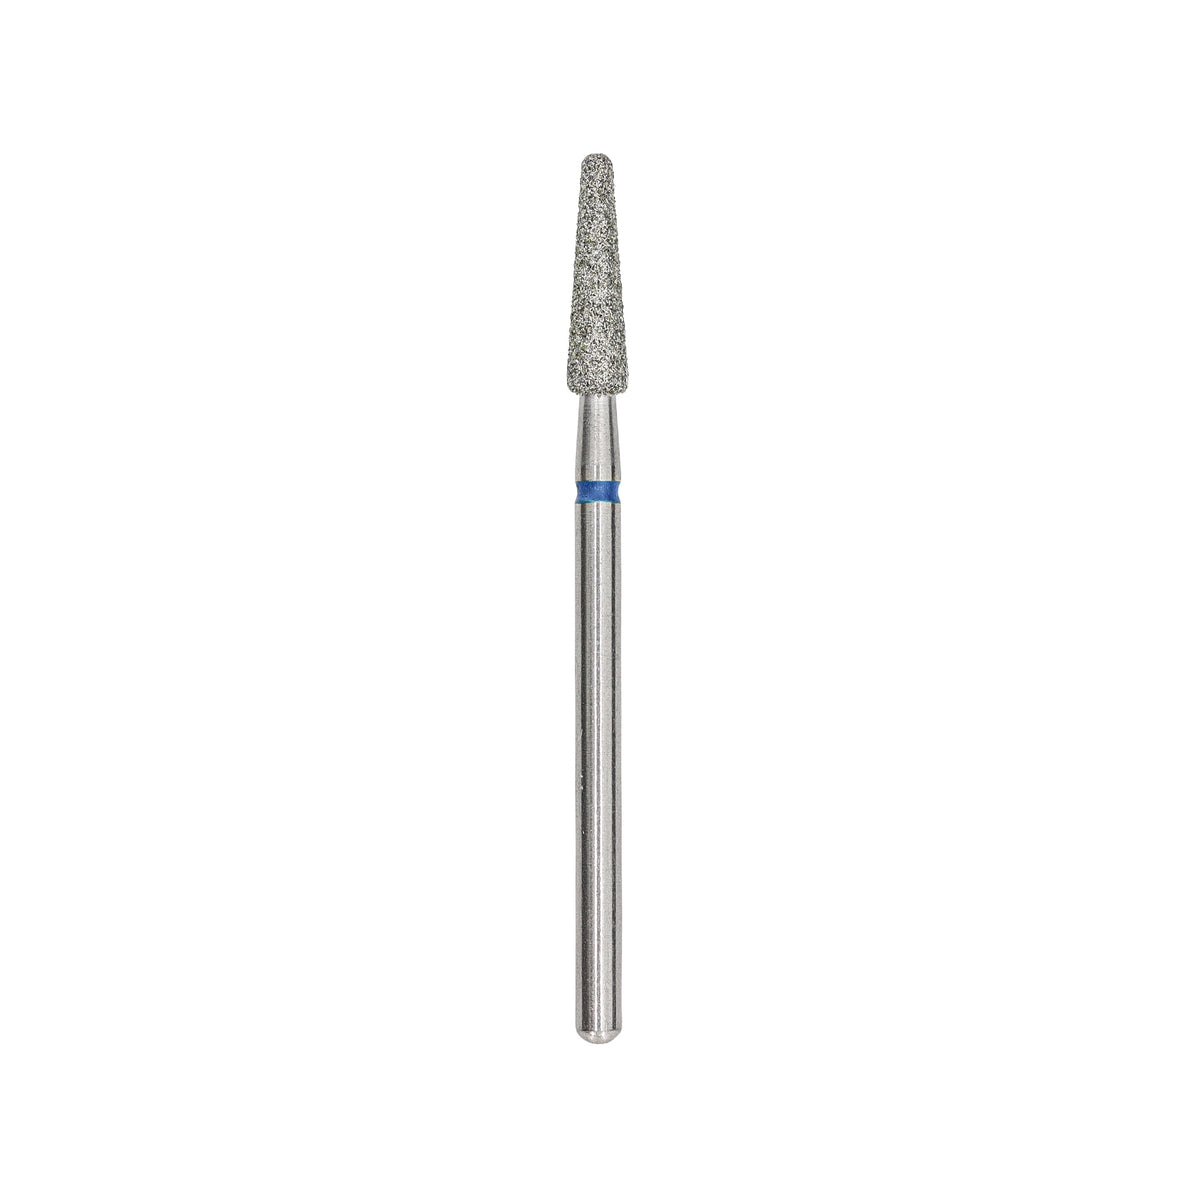 Afilara Diamond drill bit (Blue) 3mm (Pear shape) M